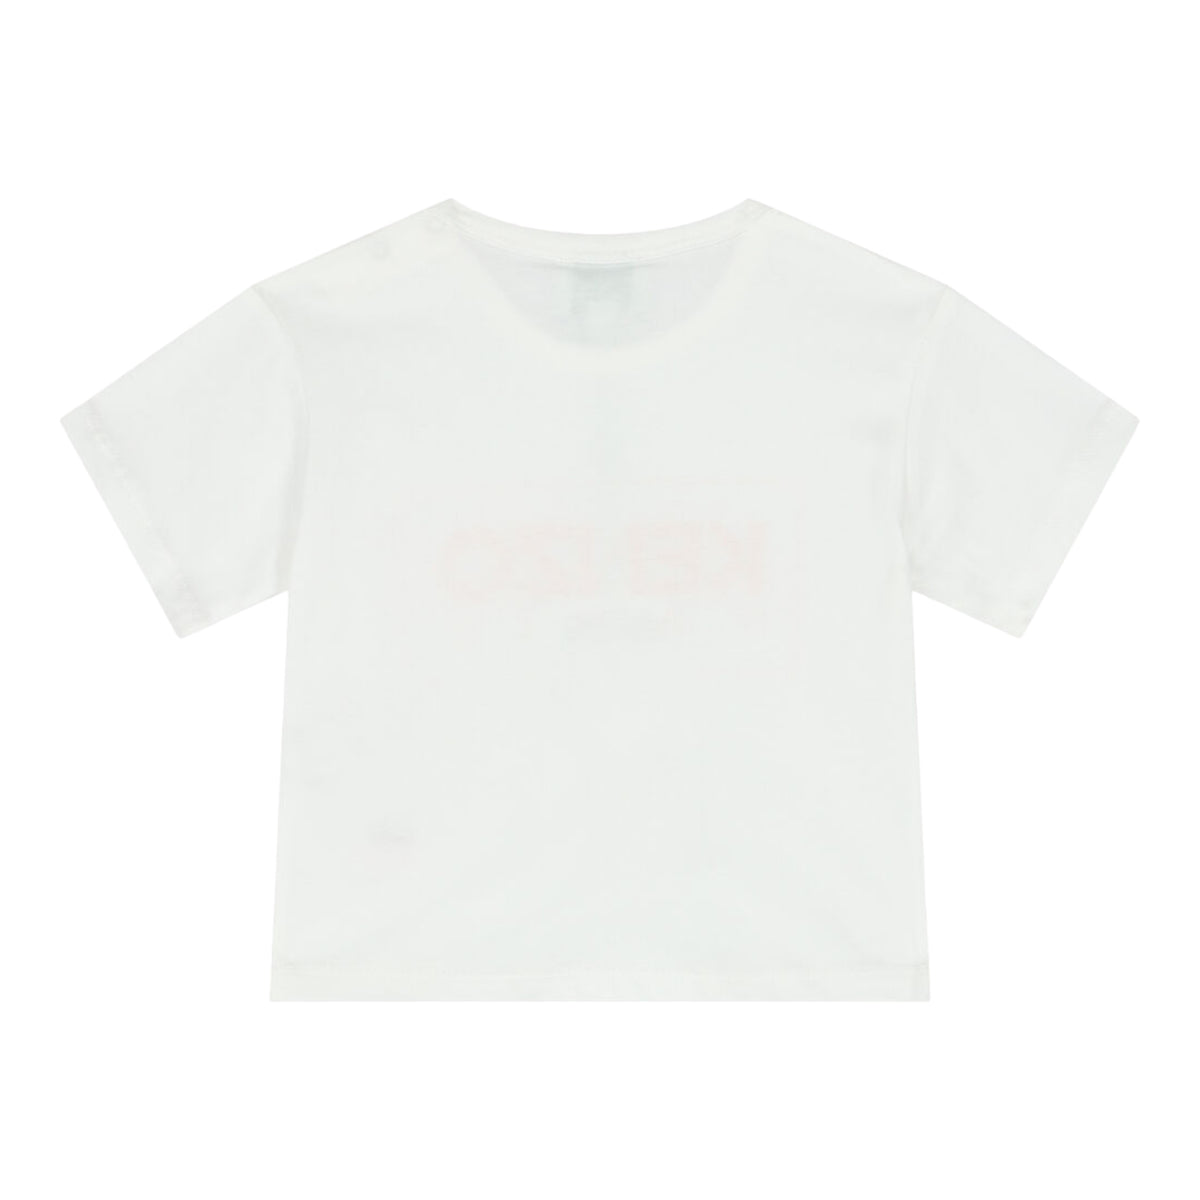 Kenzo Kids Toddler's 'KENZO PARIS' Logo T-Shirt